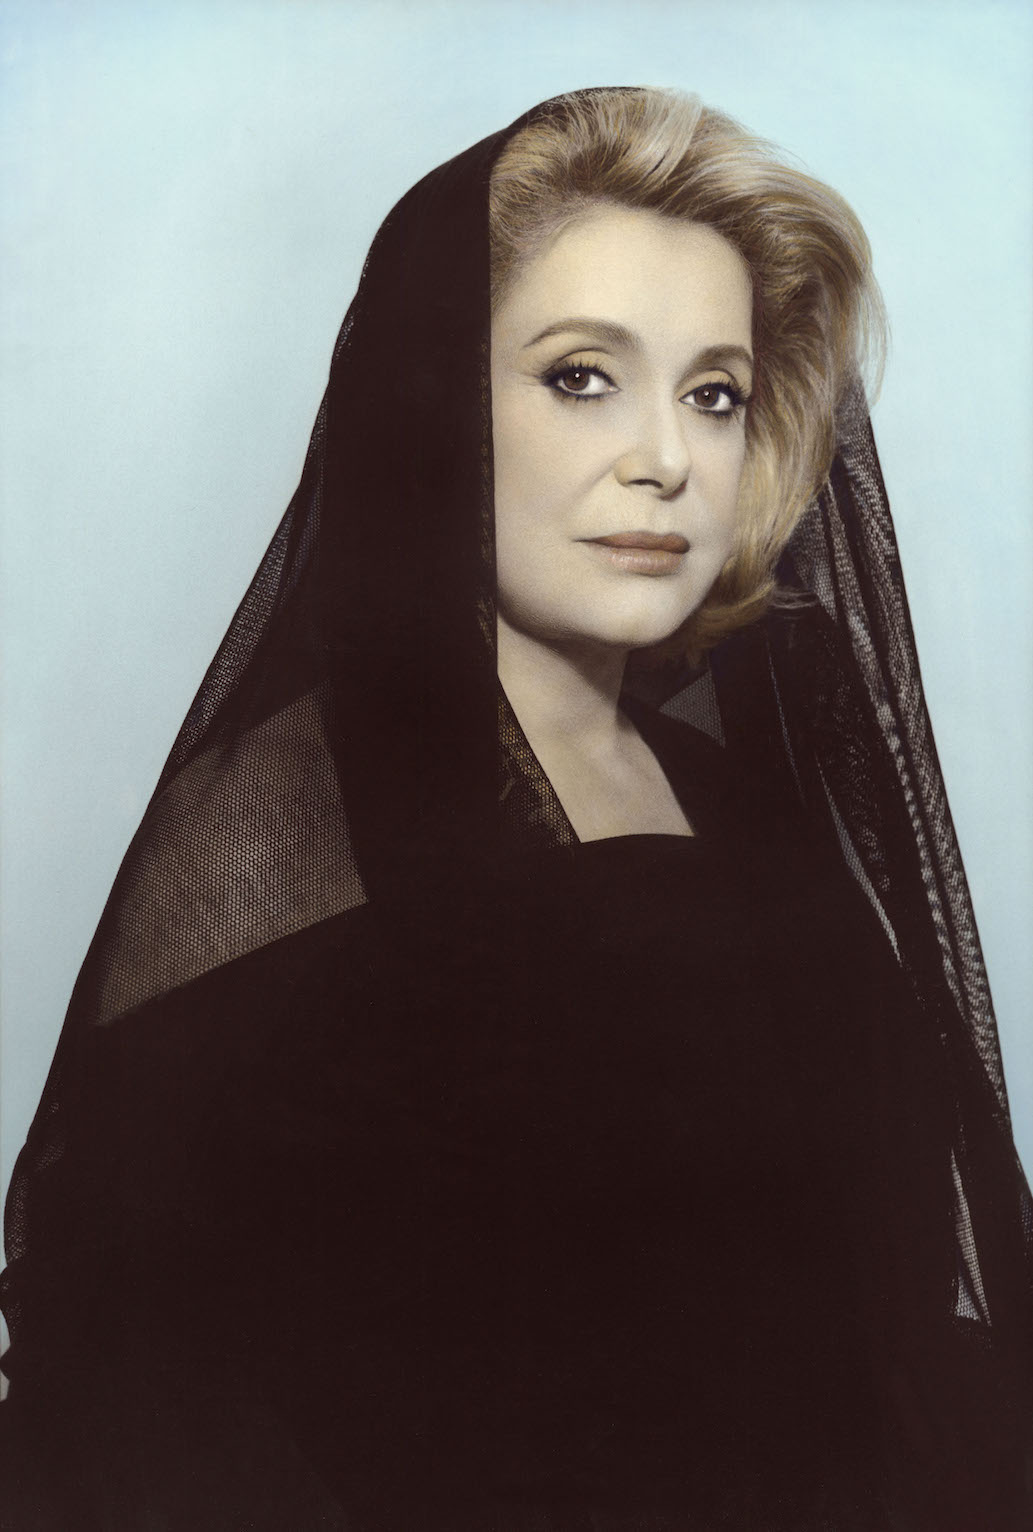 Image prise de l'actrice Catherine Deneuve, vêtue de noir et semi-voilée sur un arrière plan bleu ciel